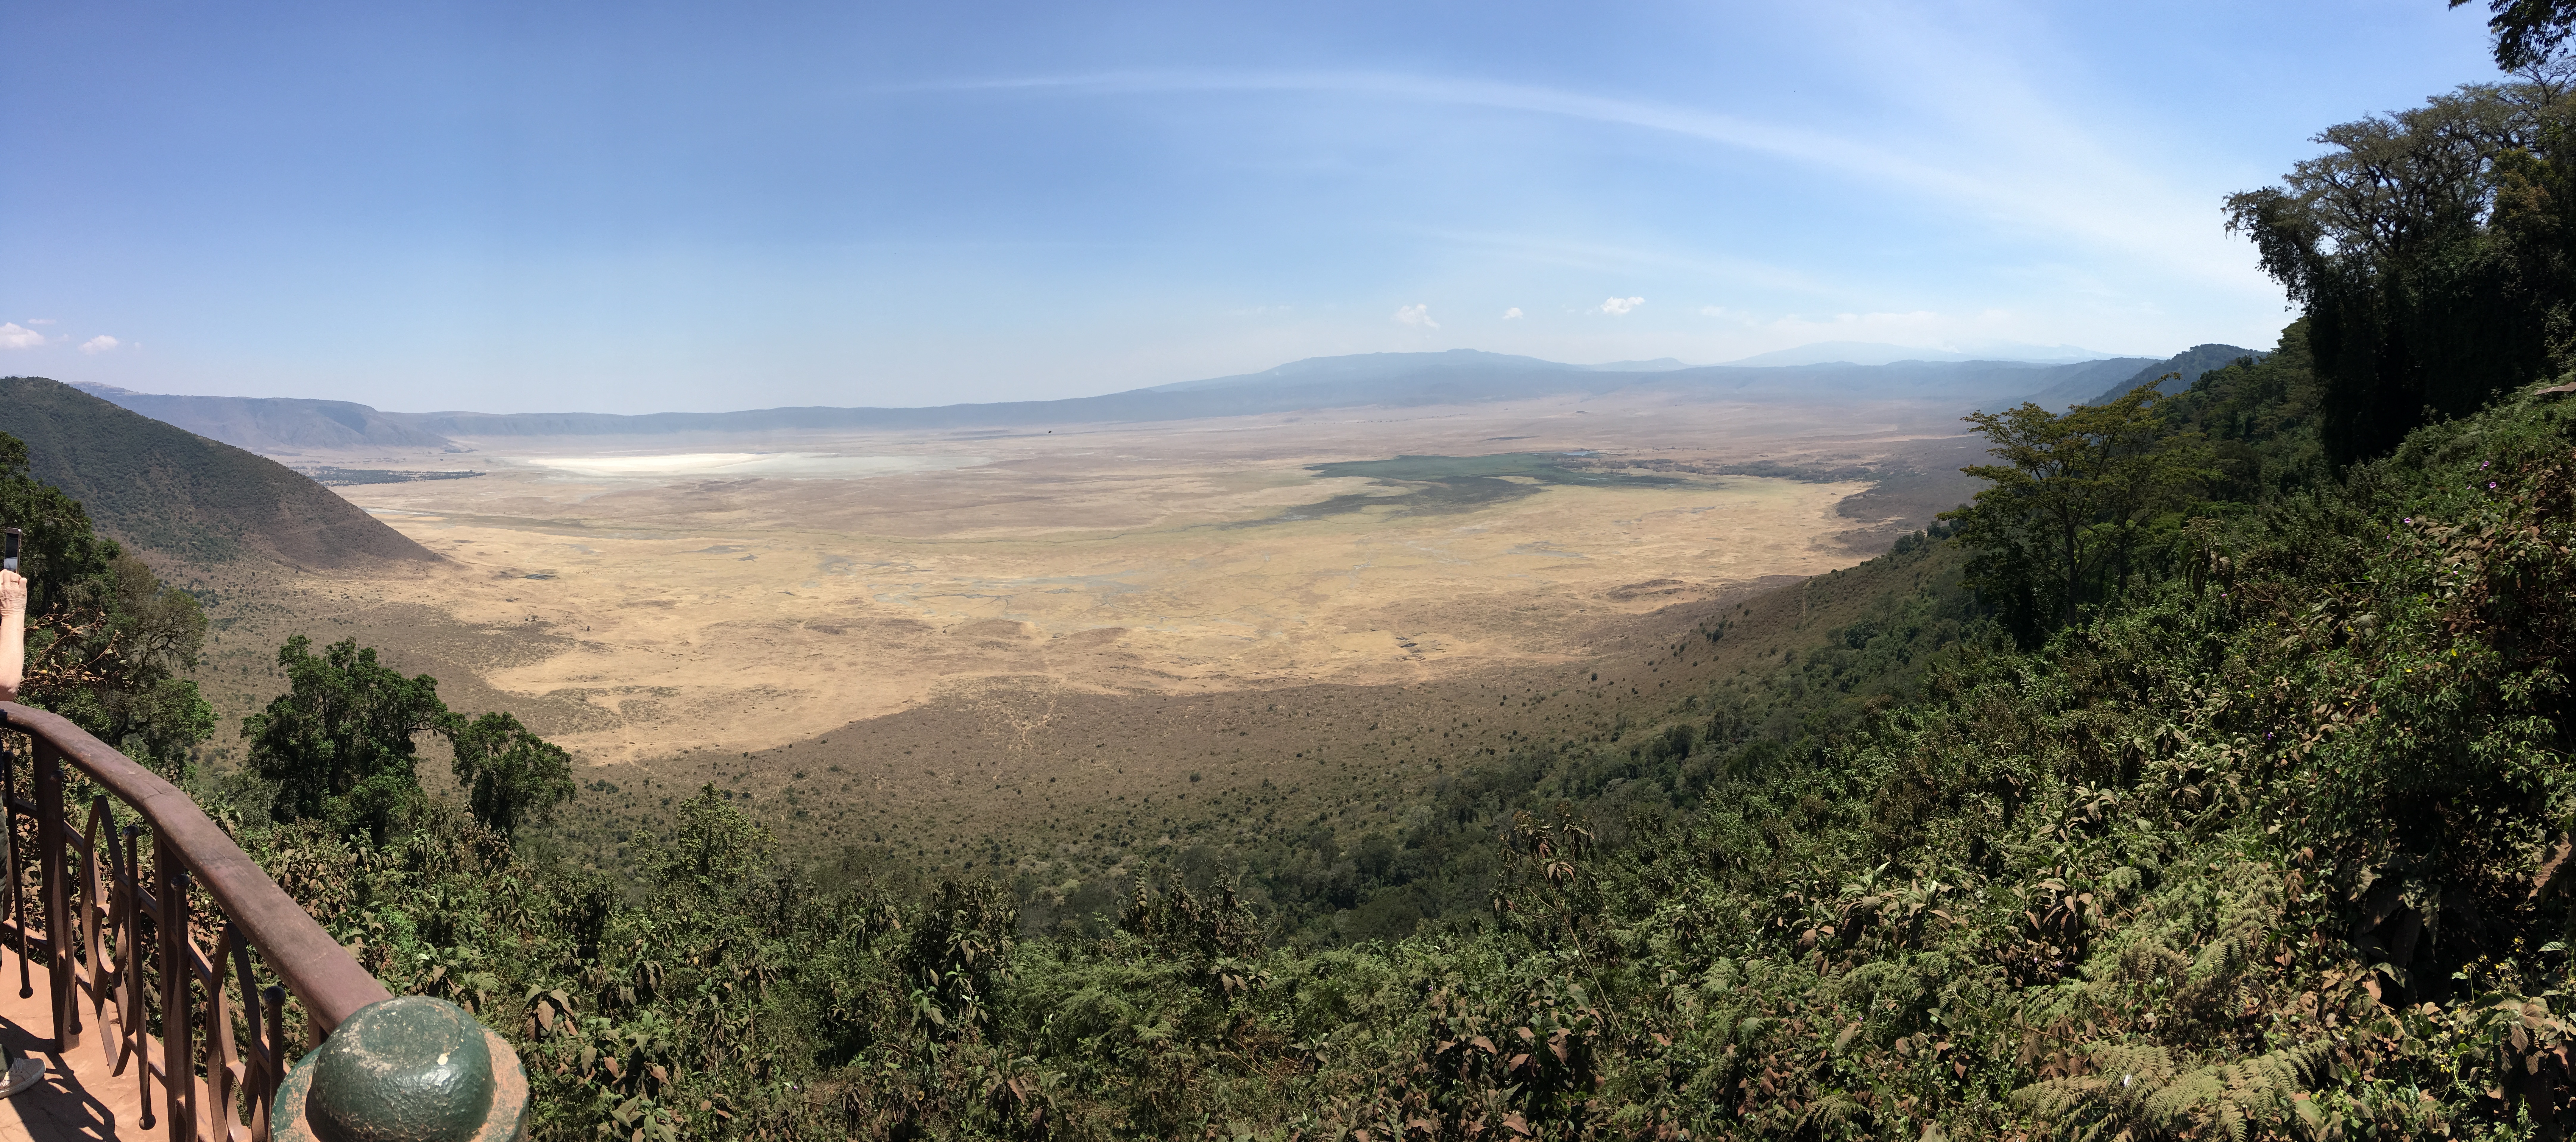 Day 93: Tanzania Part 3- Ngorongoro, Serengeti, Tarangire